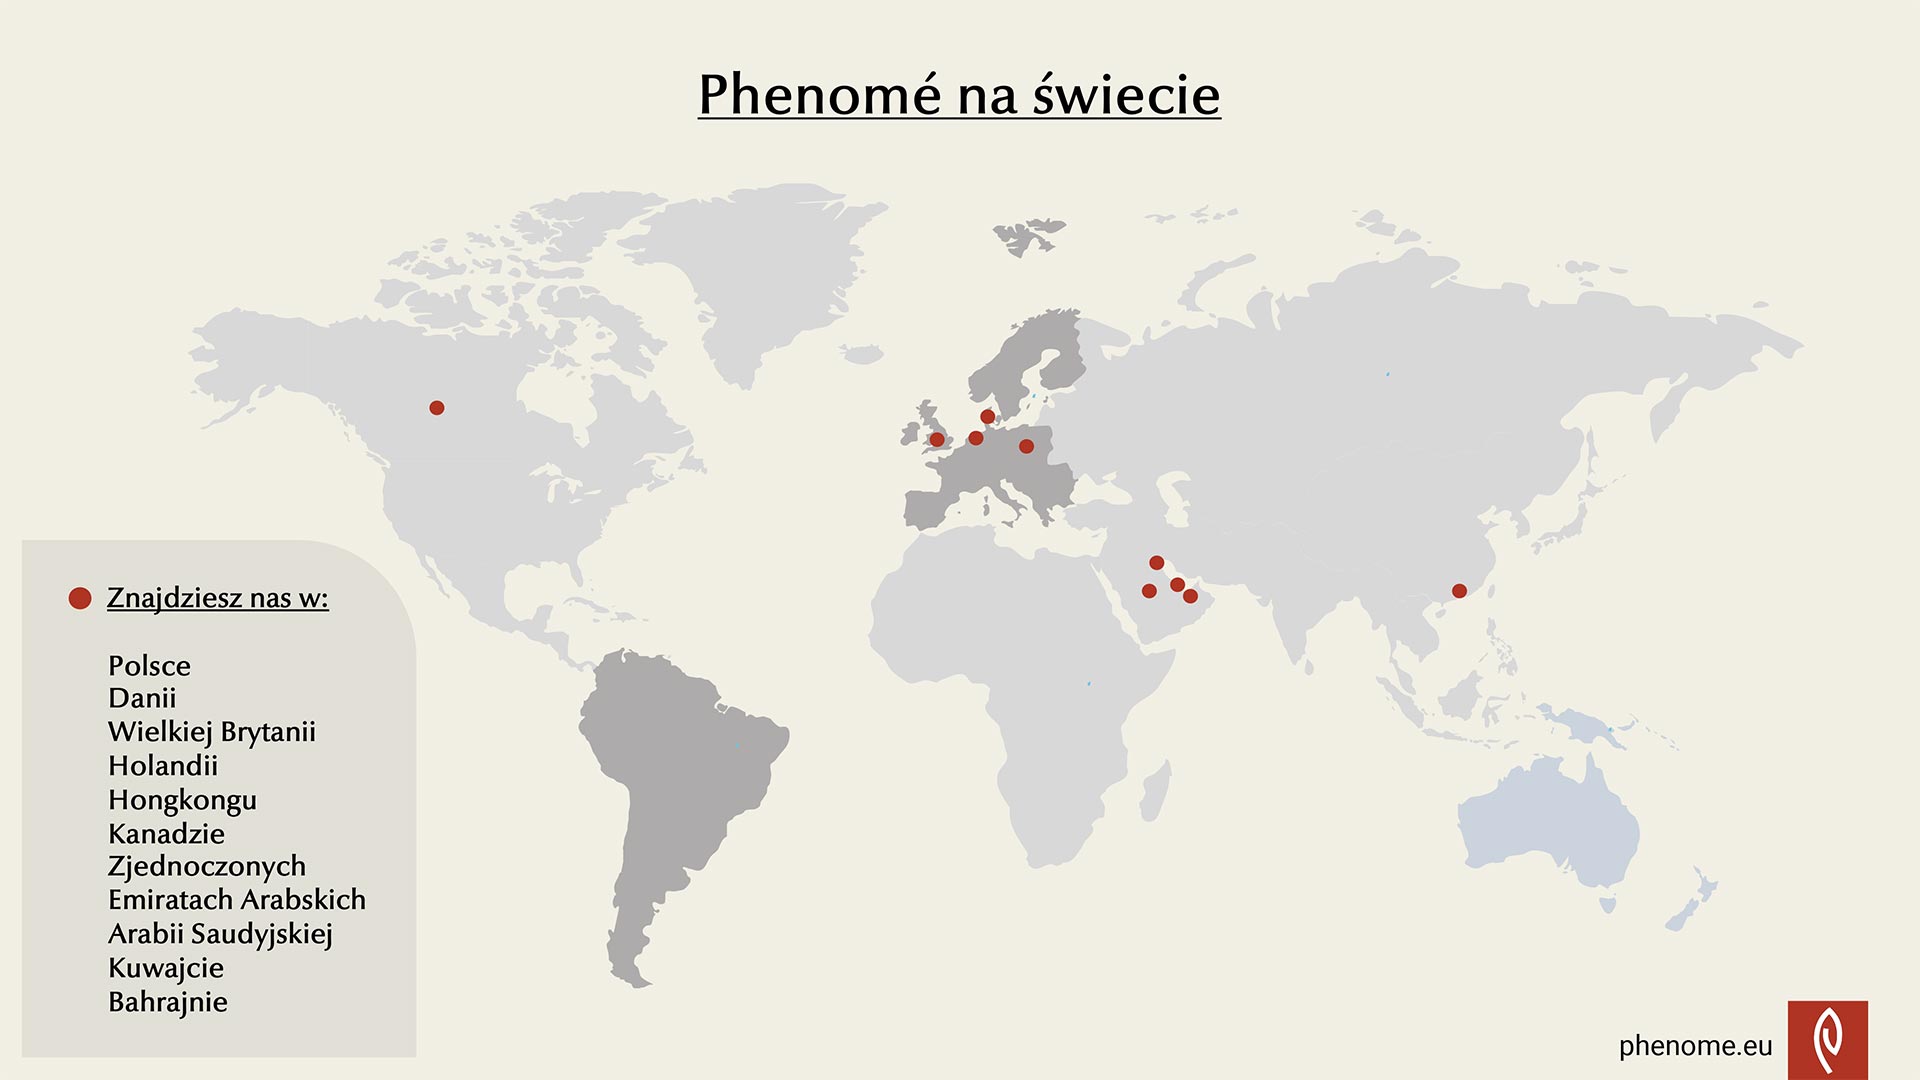 Phenomé na świecie - mapa